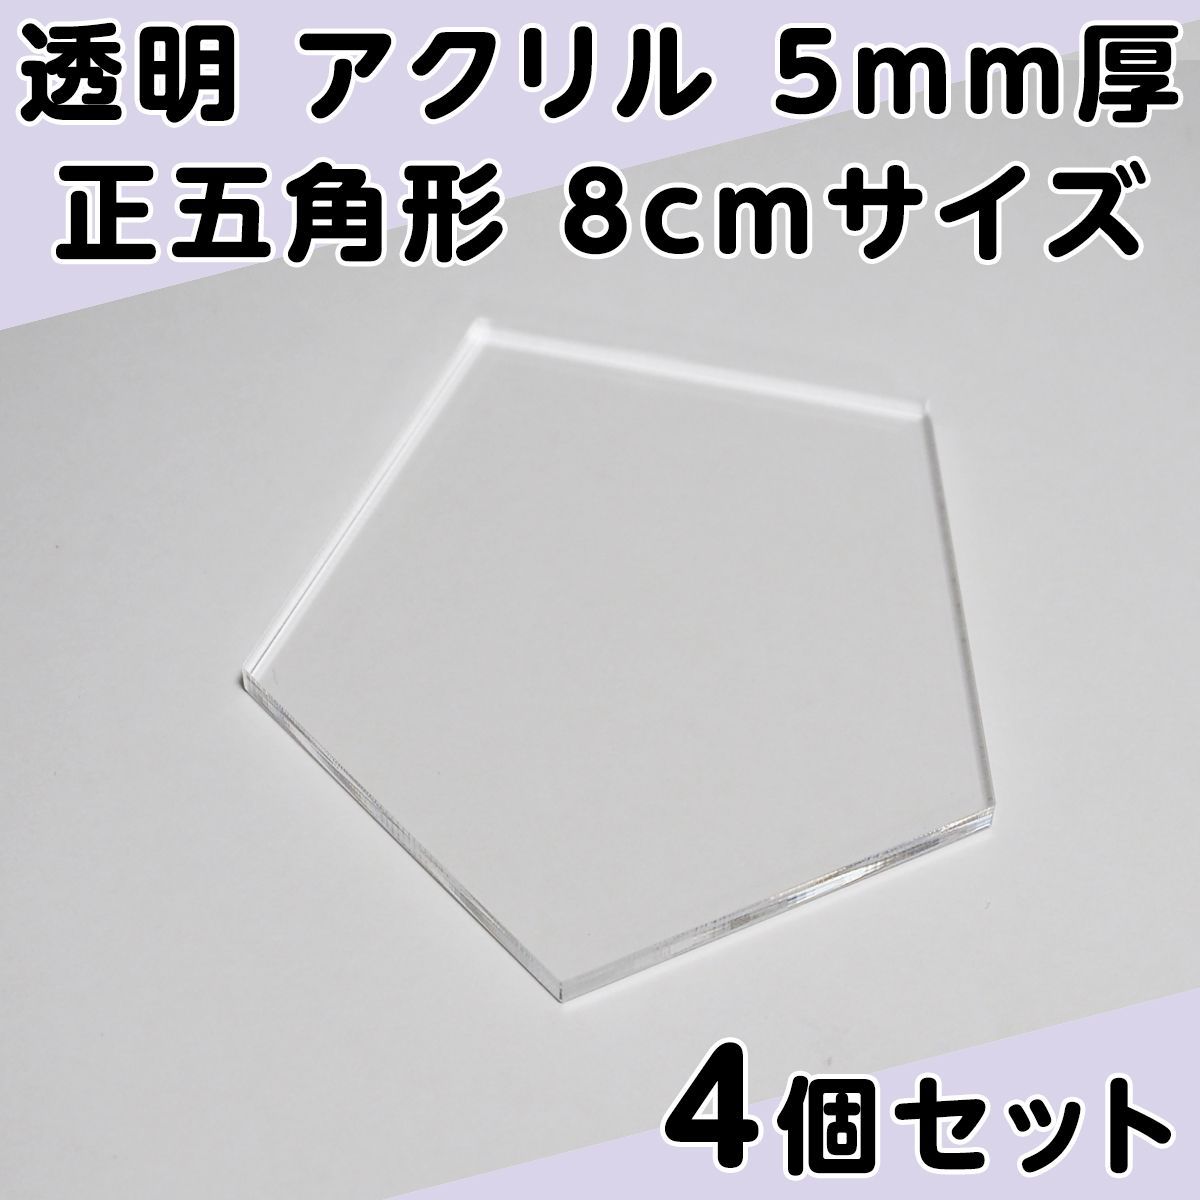 透明 アクリル 5mm厚 正五角形 8cmサイズ 4個セット - メルカリ